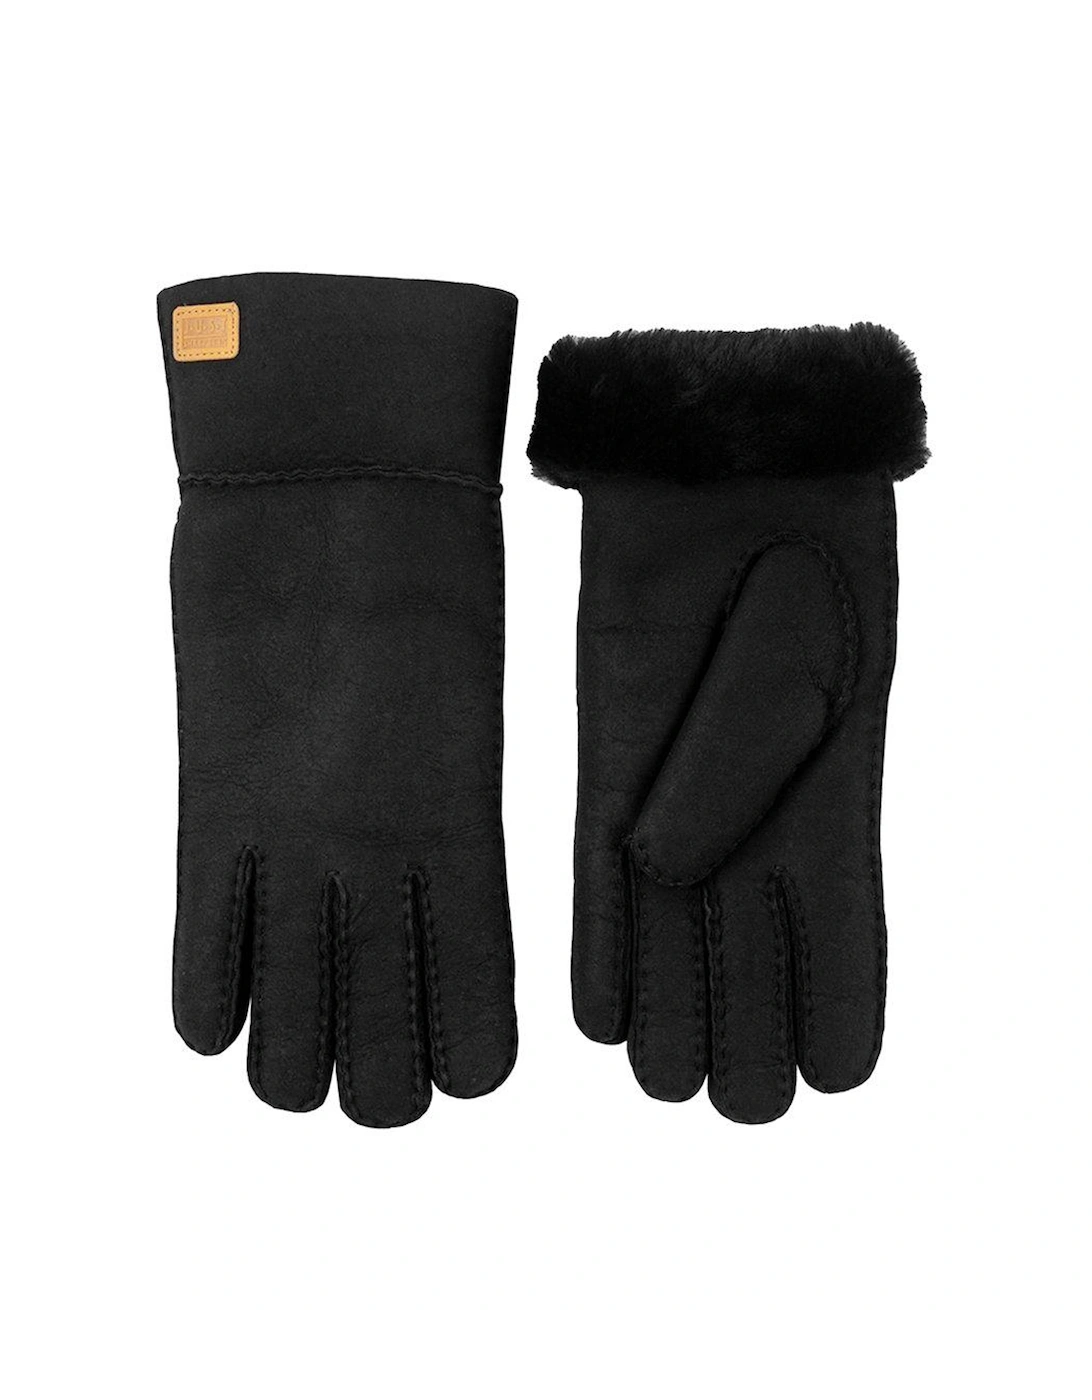 Charlotte Sheepskin Gloves - Black, 2 of 1